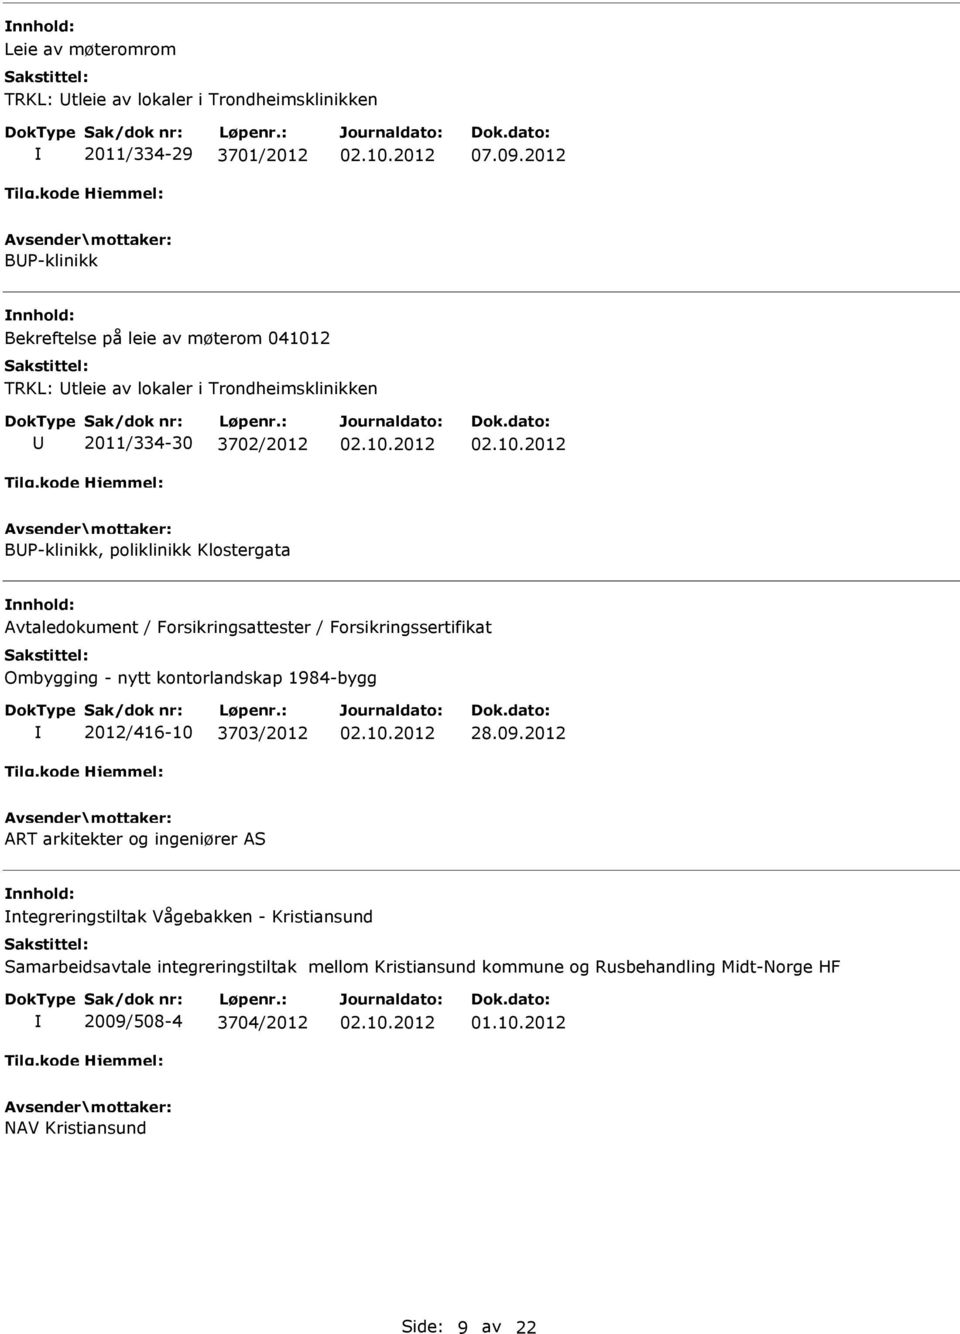 Klostergata Avtaledokument / Forsikringsattester / Forsikringssertifikat Ombygging - nytt kontorlandskap 1984-bygg 2012/416-10 3703/2012 28.09.